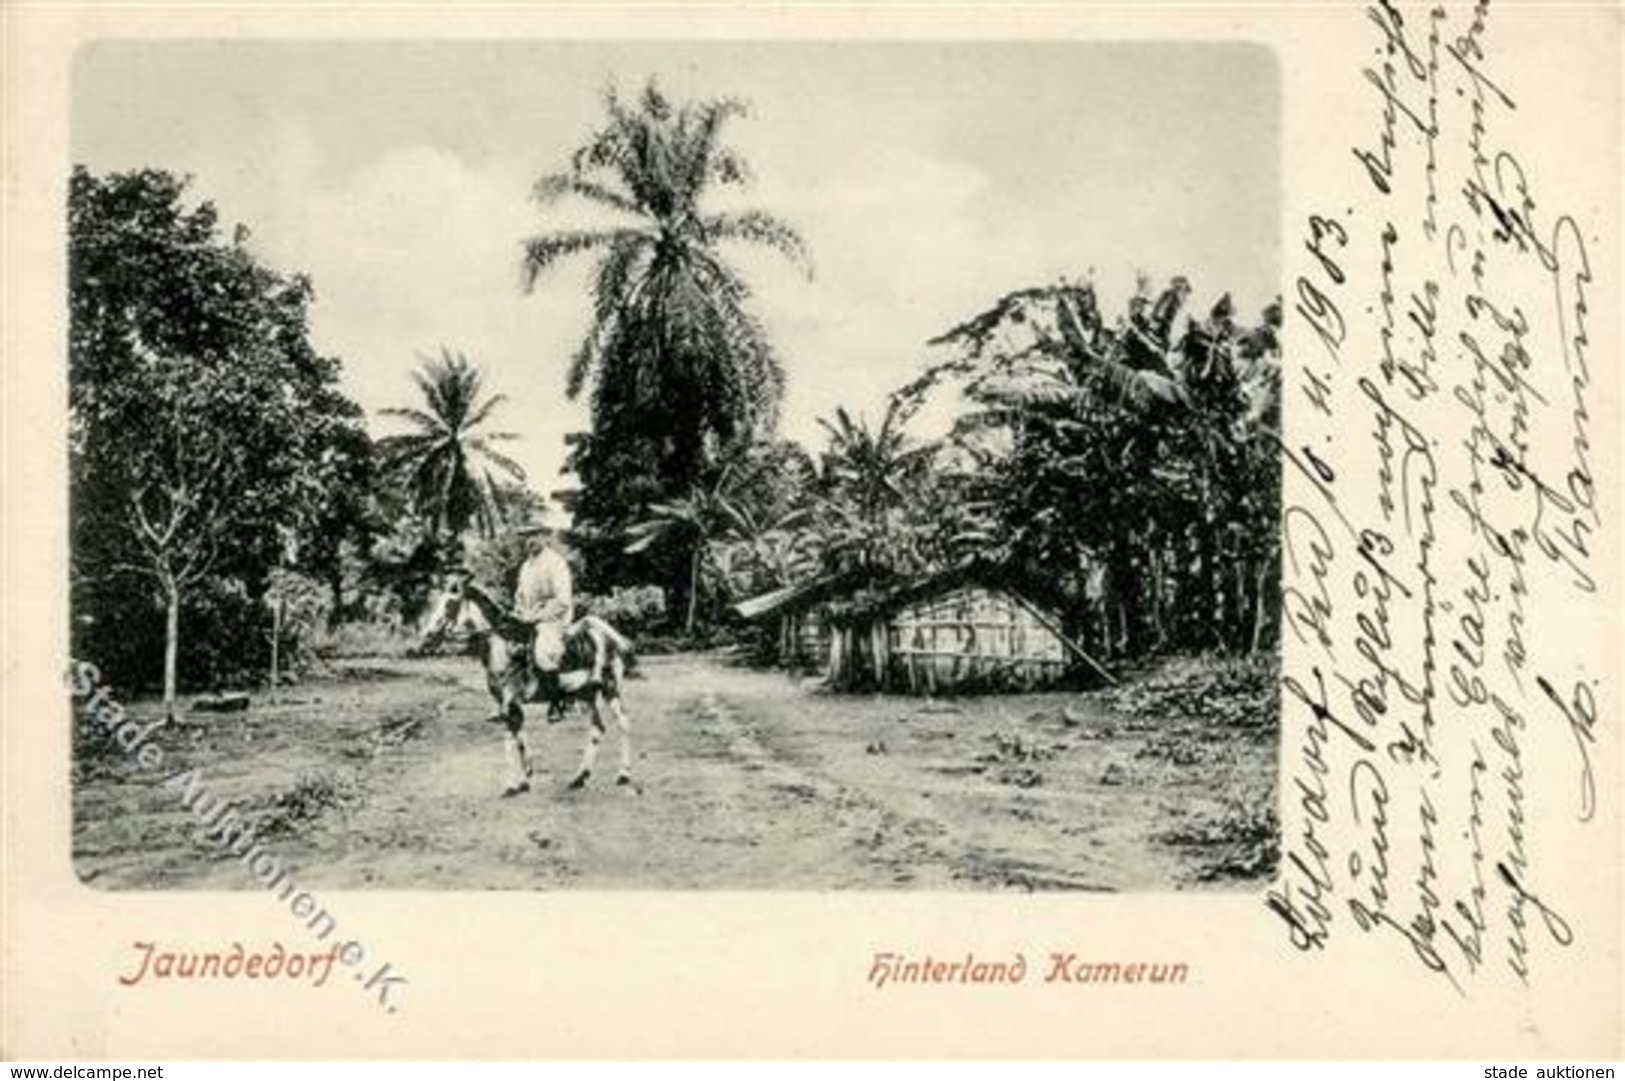 Kamerun Jaundedorf 1903 I-II - Cameroon